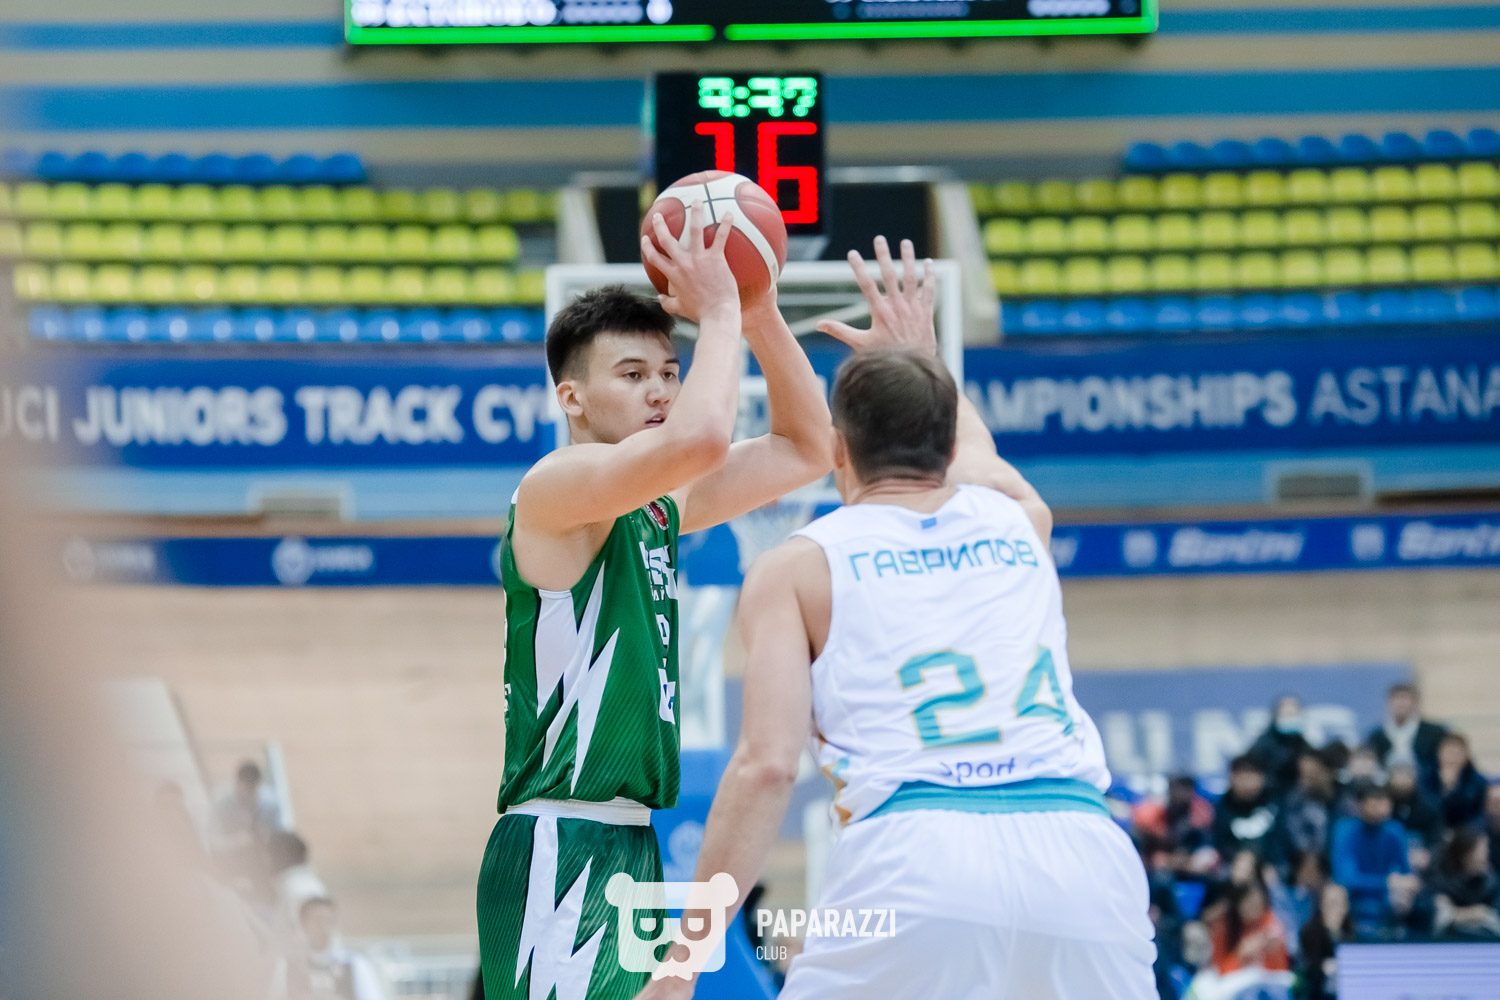 ПБК "Астана"- БК "Барсы" (Атырау). Баскетбол. Национальная лига 